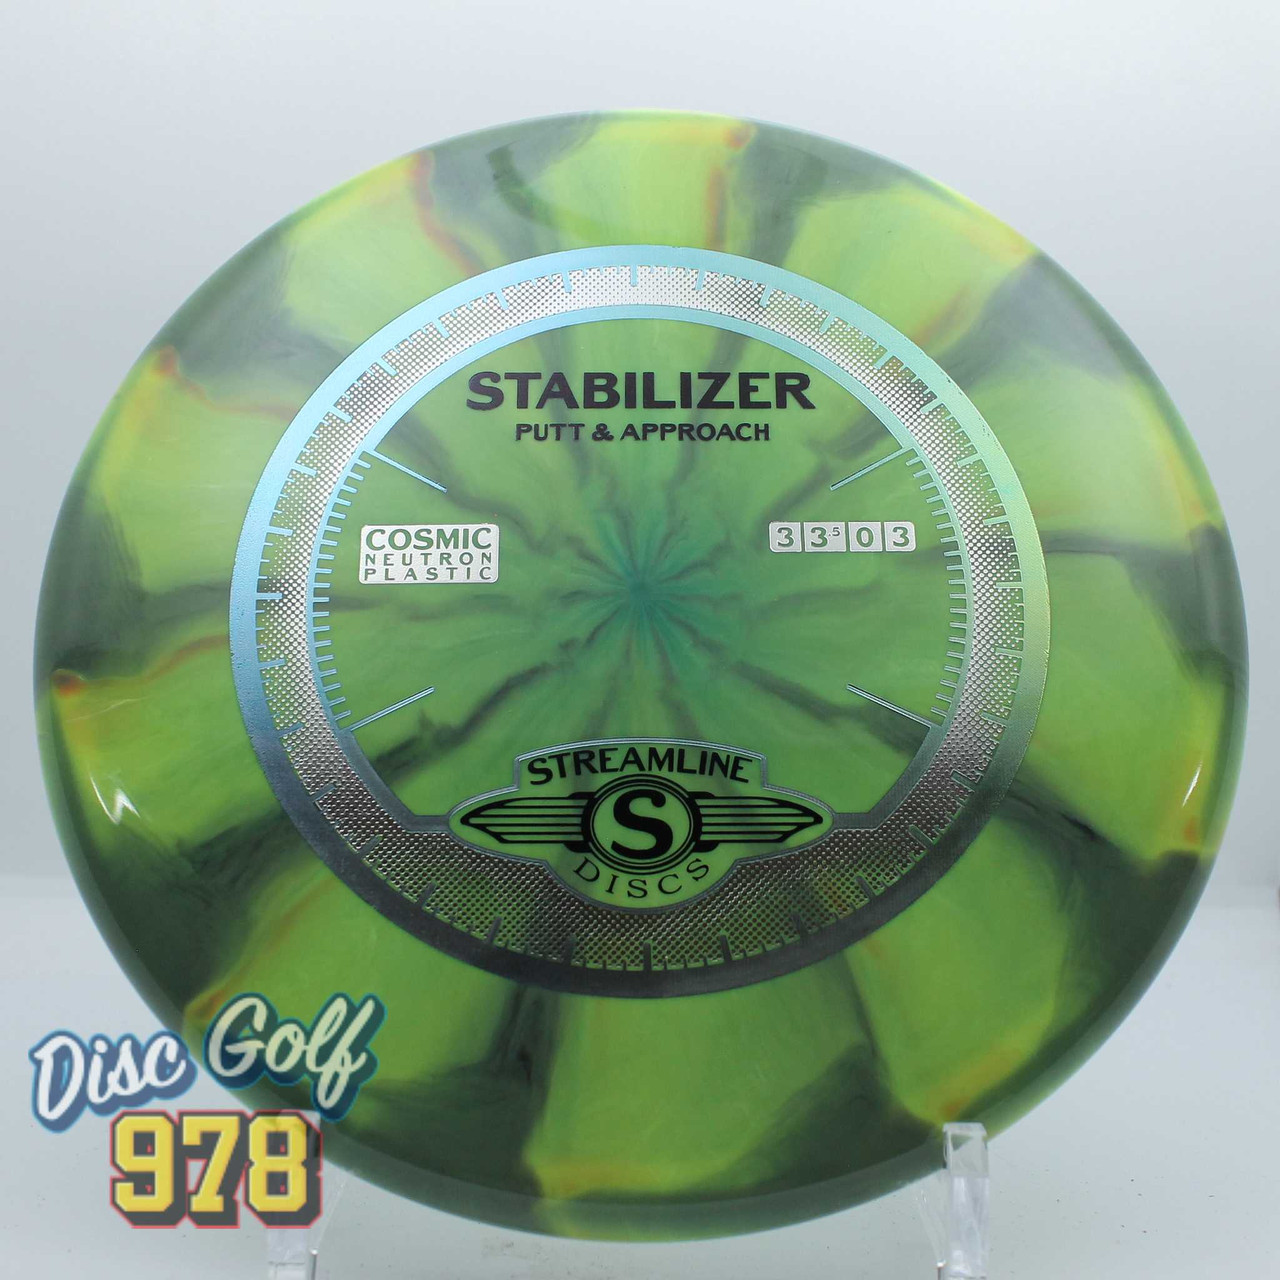 Streamline Stabilizer Cosmic Neutron Green 169.6g